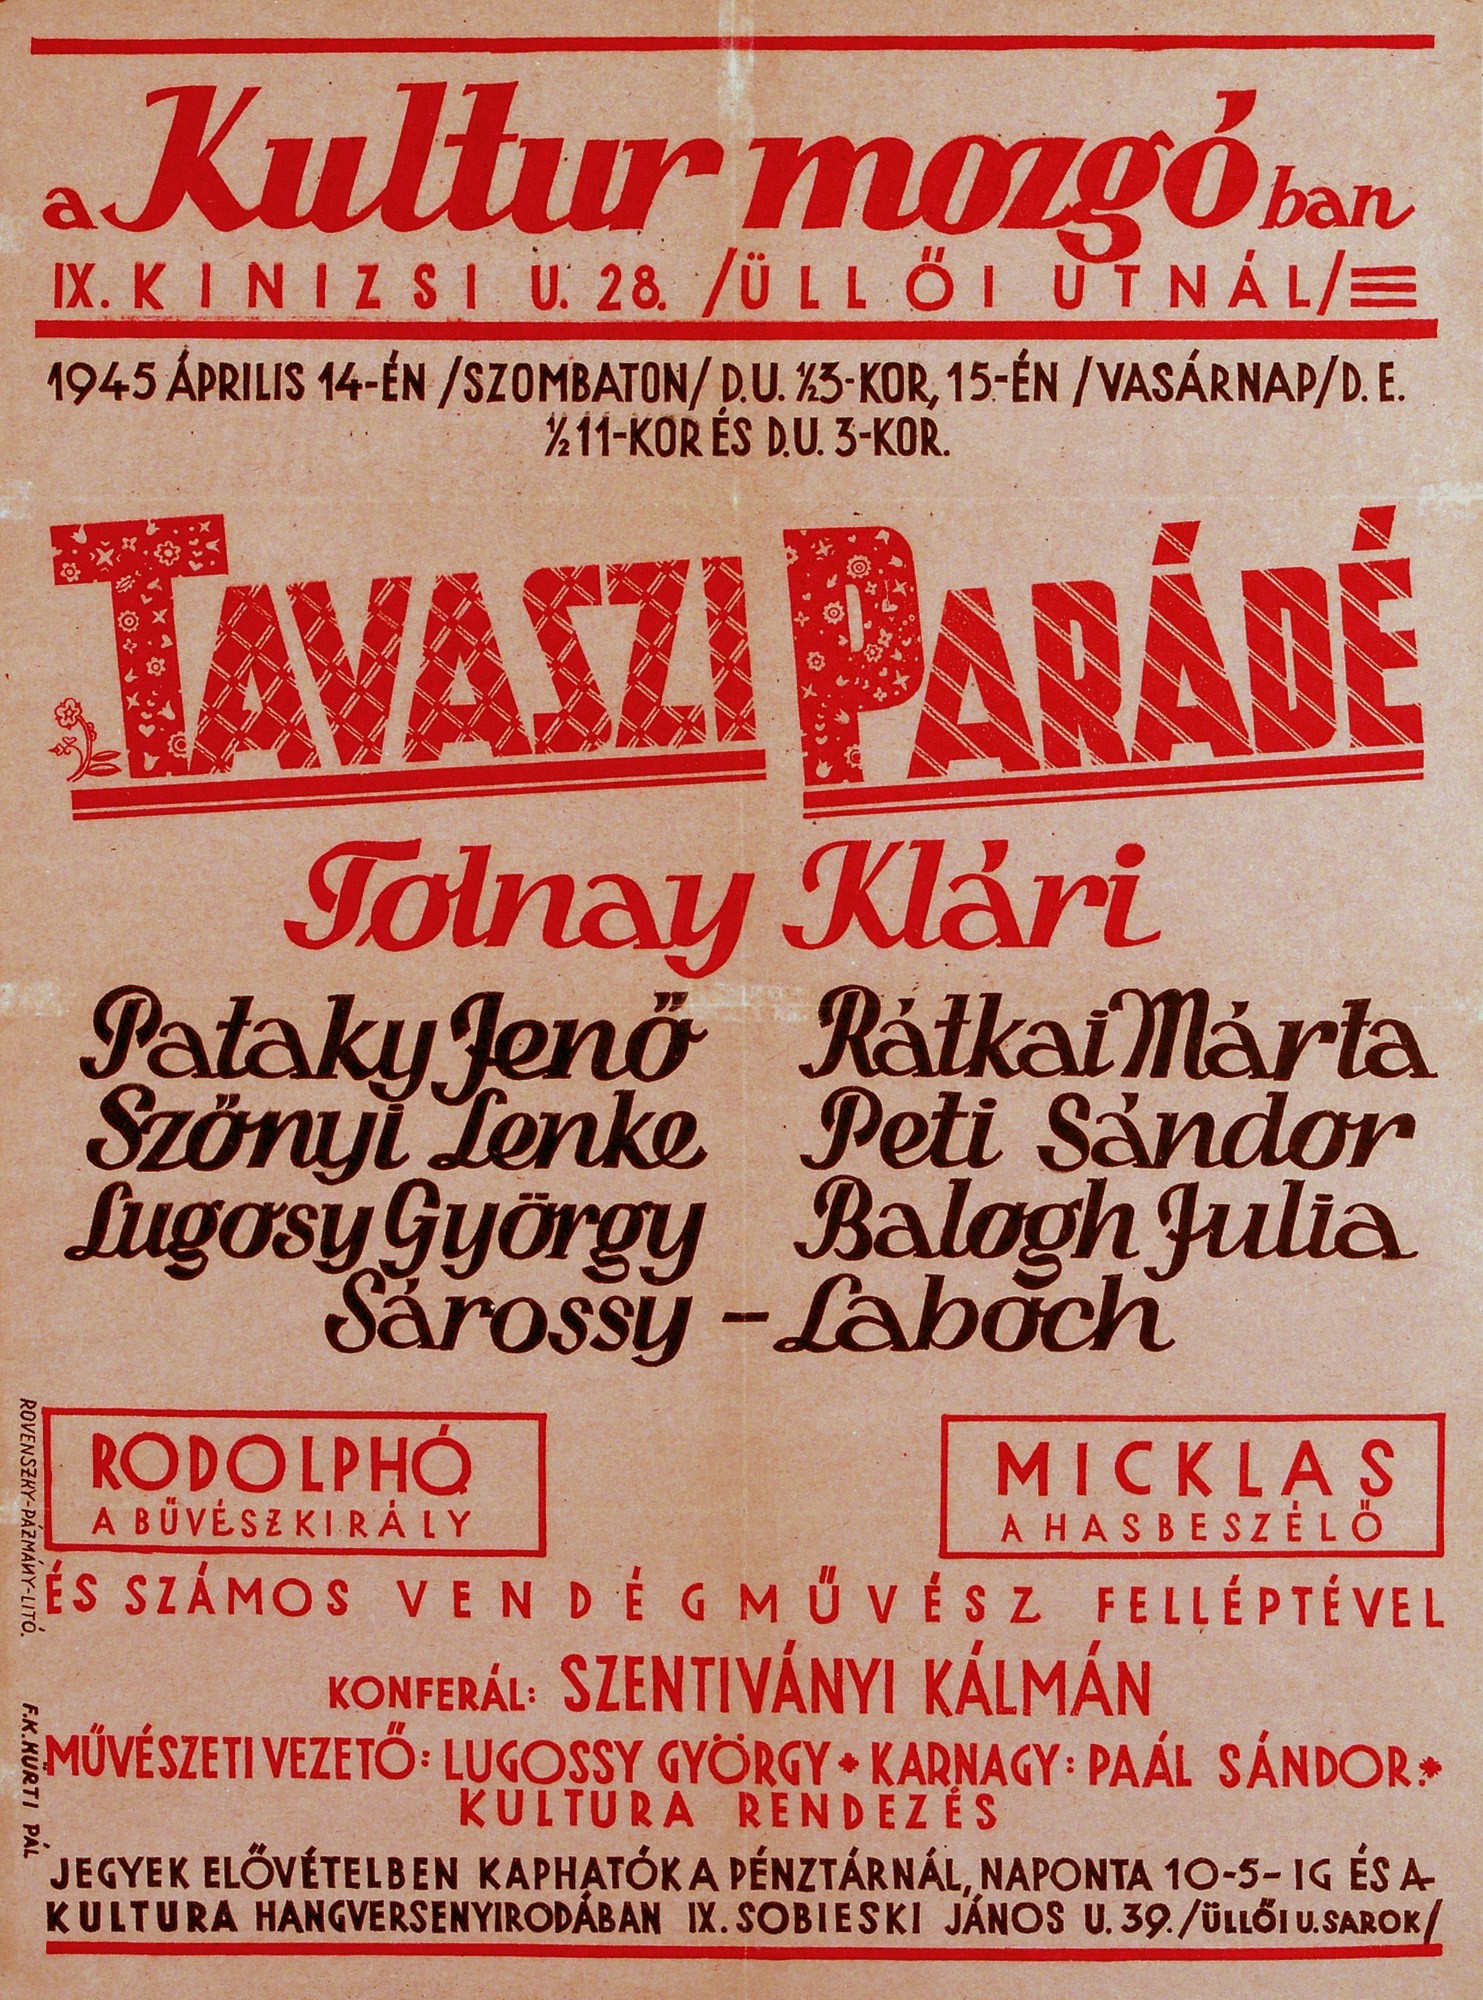 Tavaszi Parádé címen műsorhirdető plakát (Kecskeméti Katona József Múzeum CC BY-NC-SA)